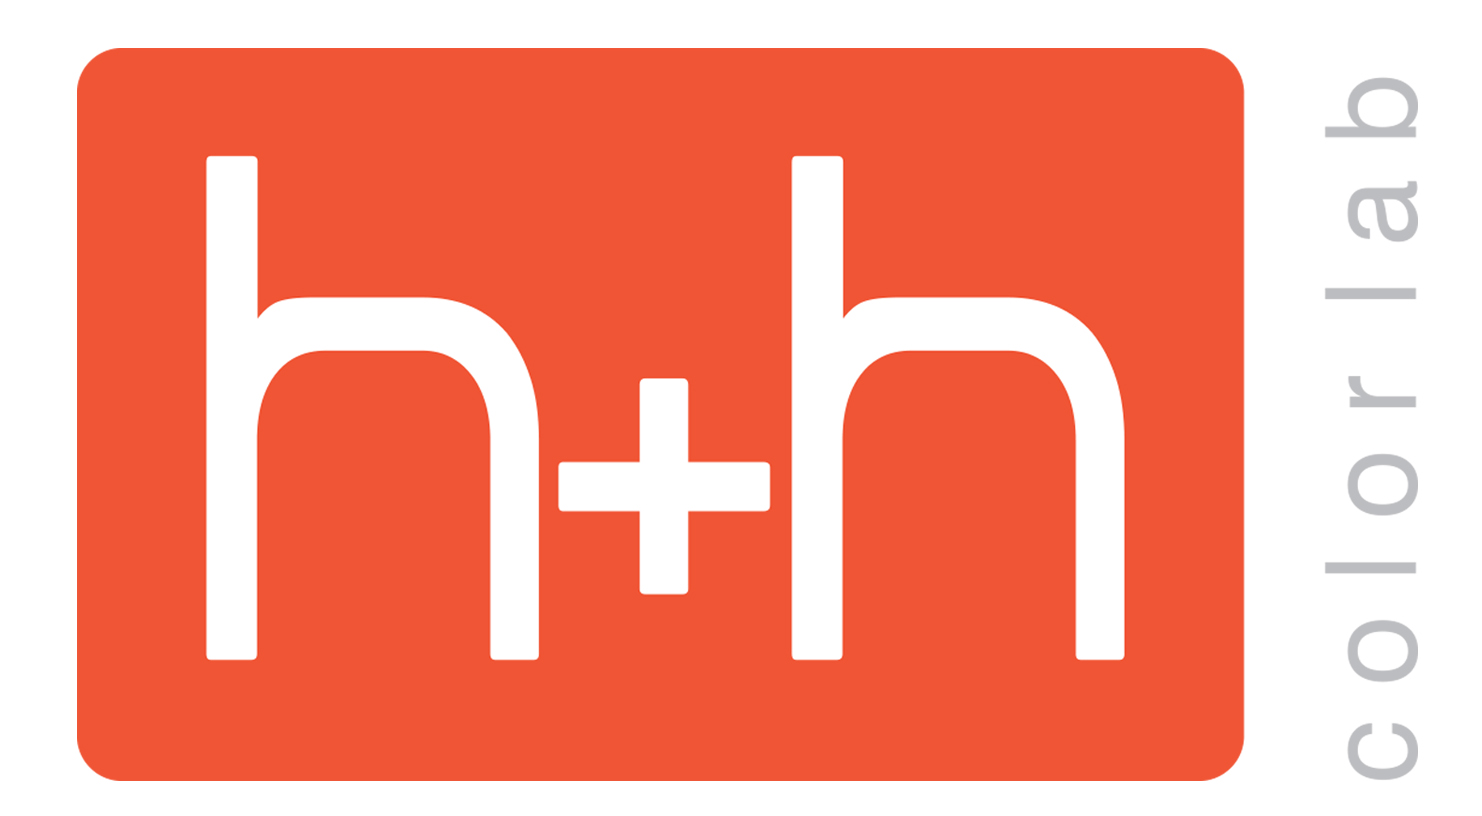 h+h logo.jpg